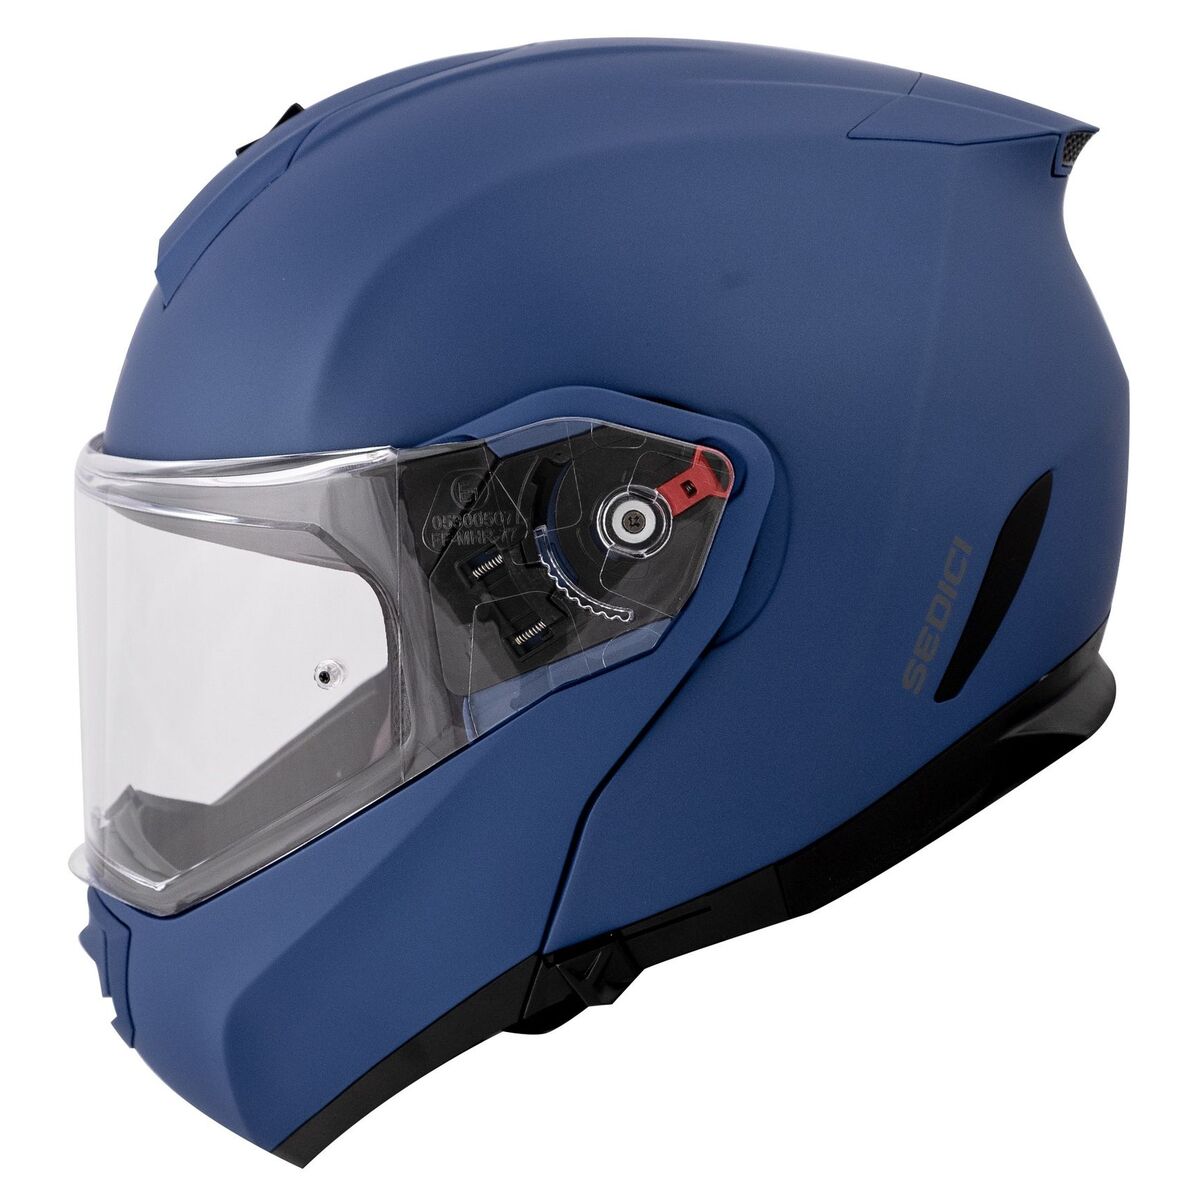 Sedici Sistema II Helmet - Solid in matte blue